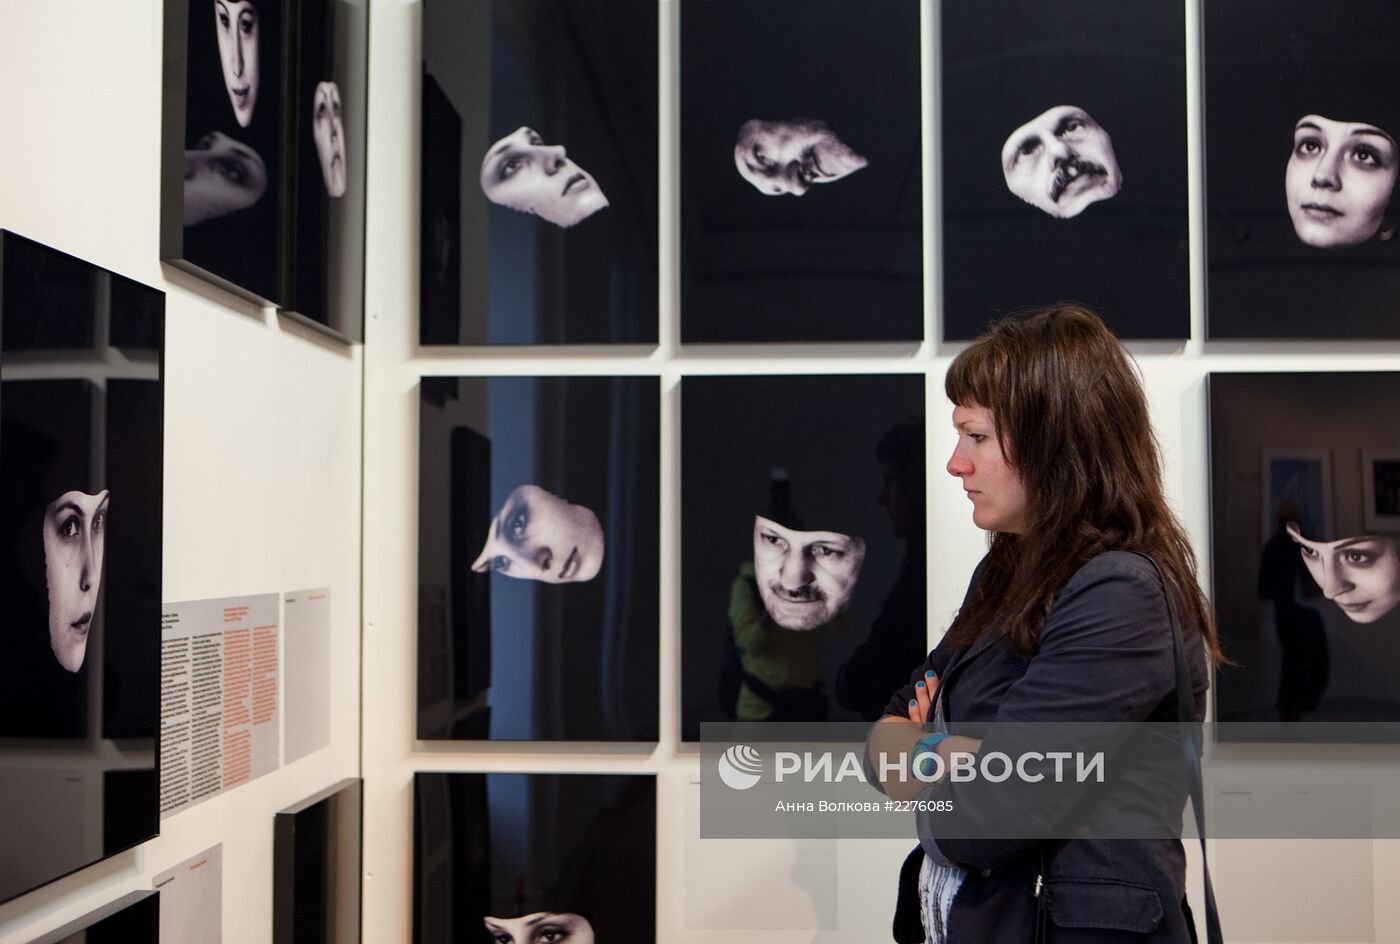 Выставка "Русское настоящее" в Санкт-Петербурге